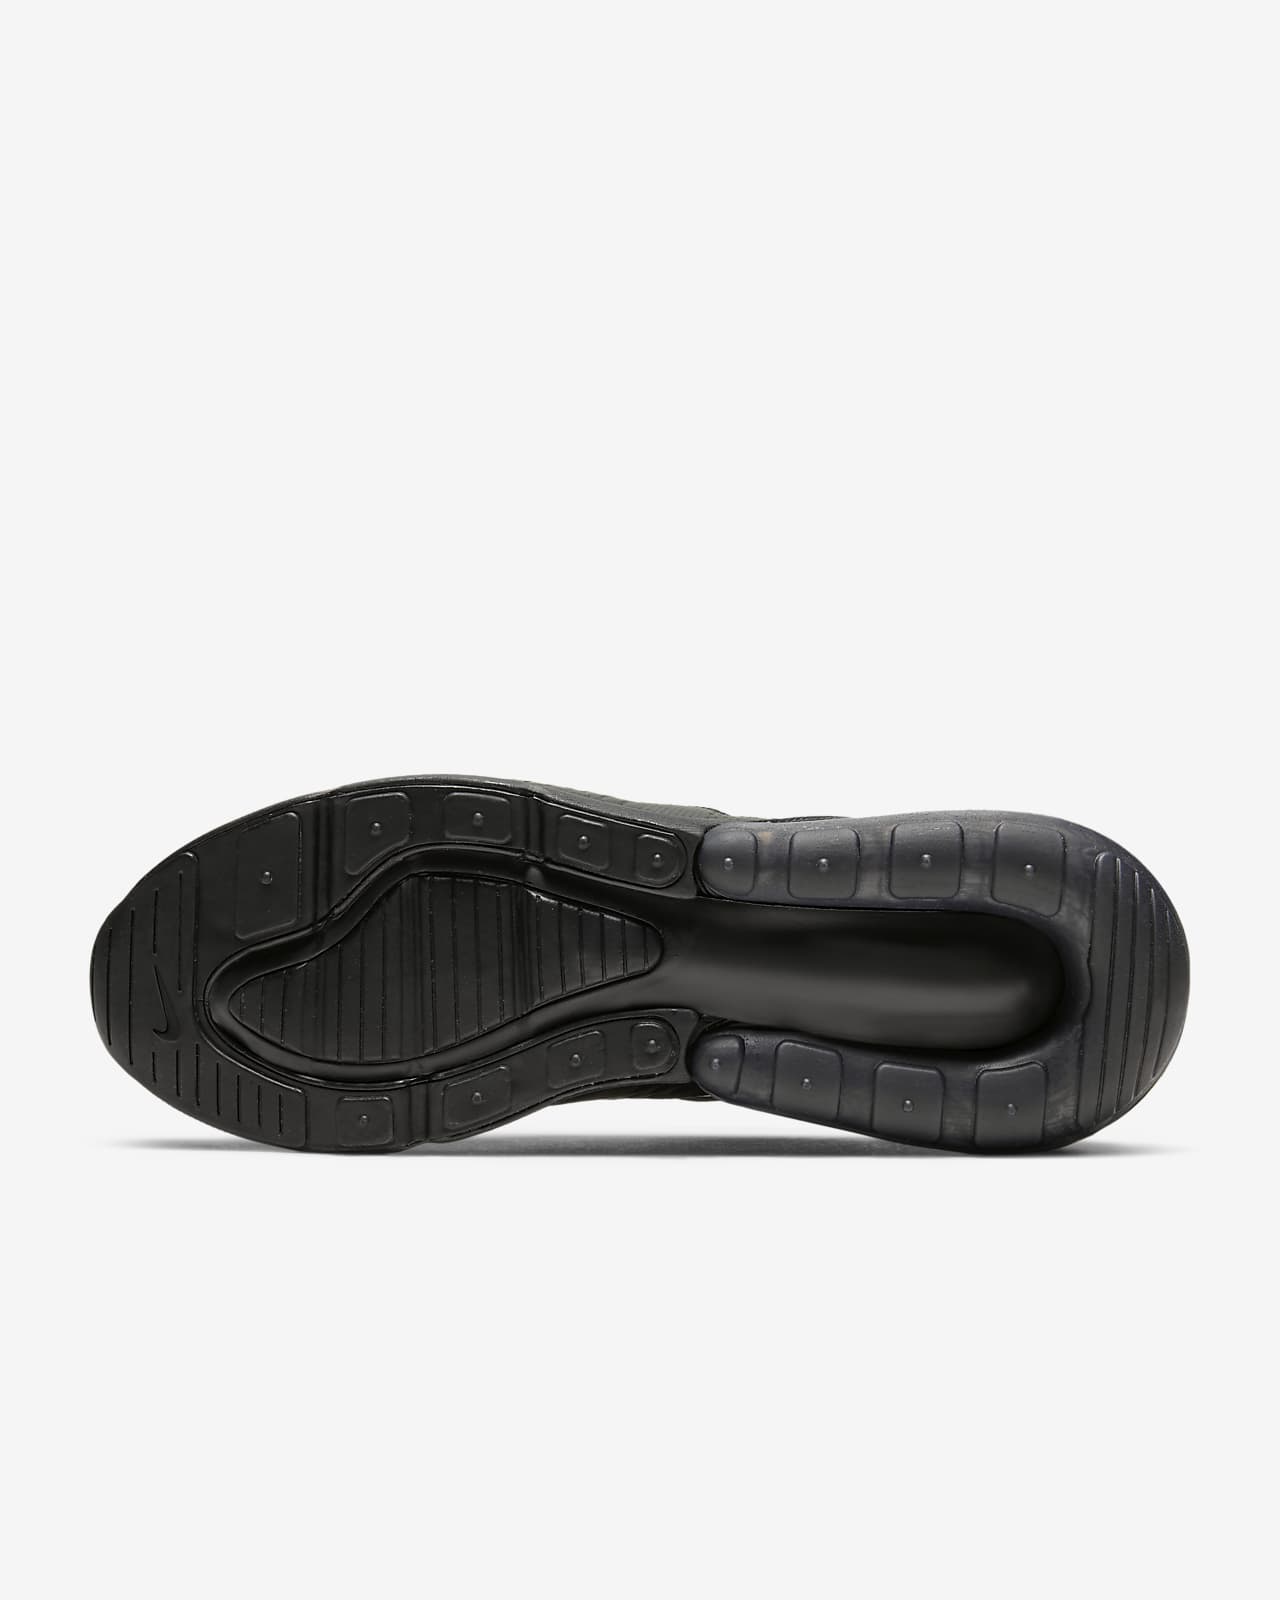 Nike Air Max 270 Men's Shoe. Nike LU